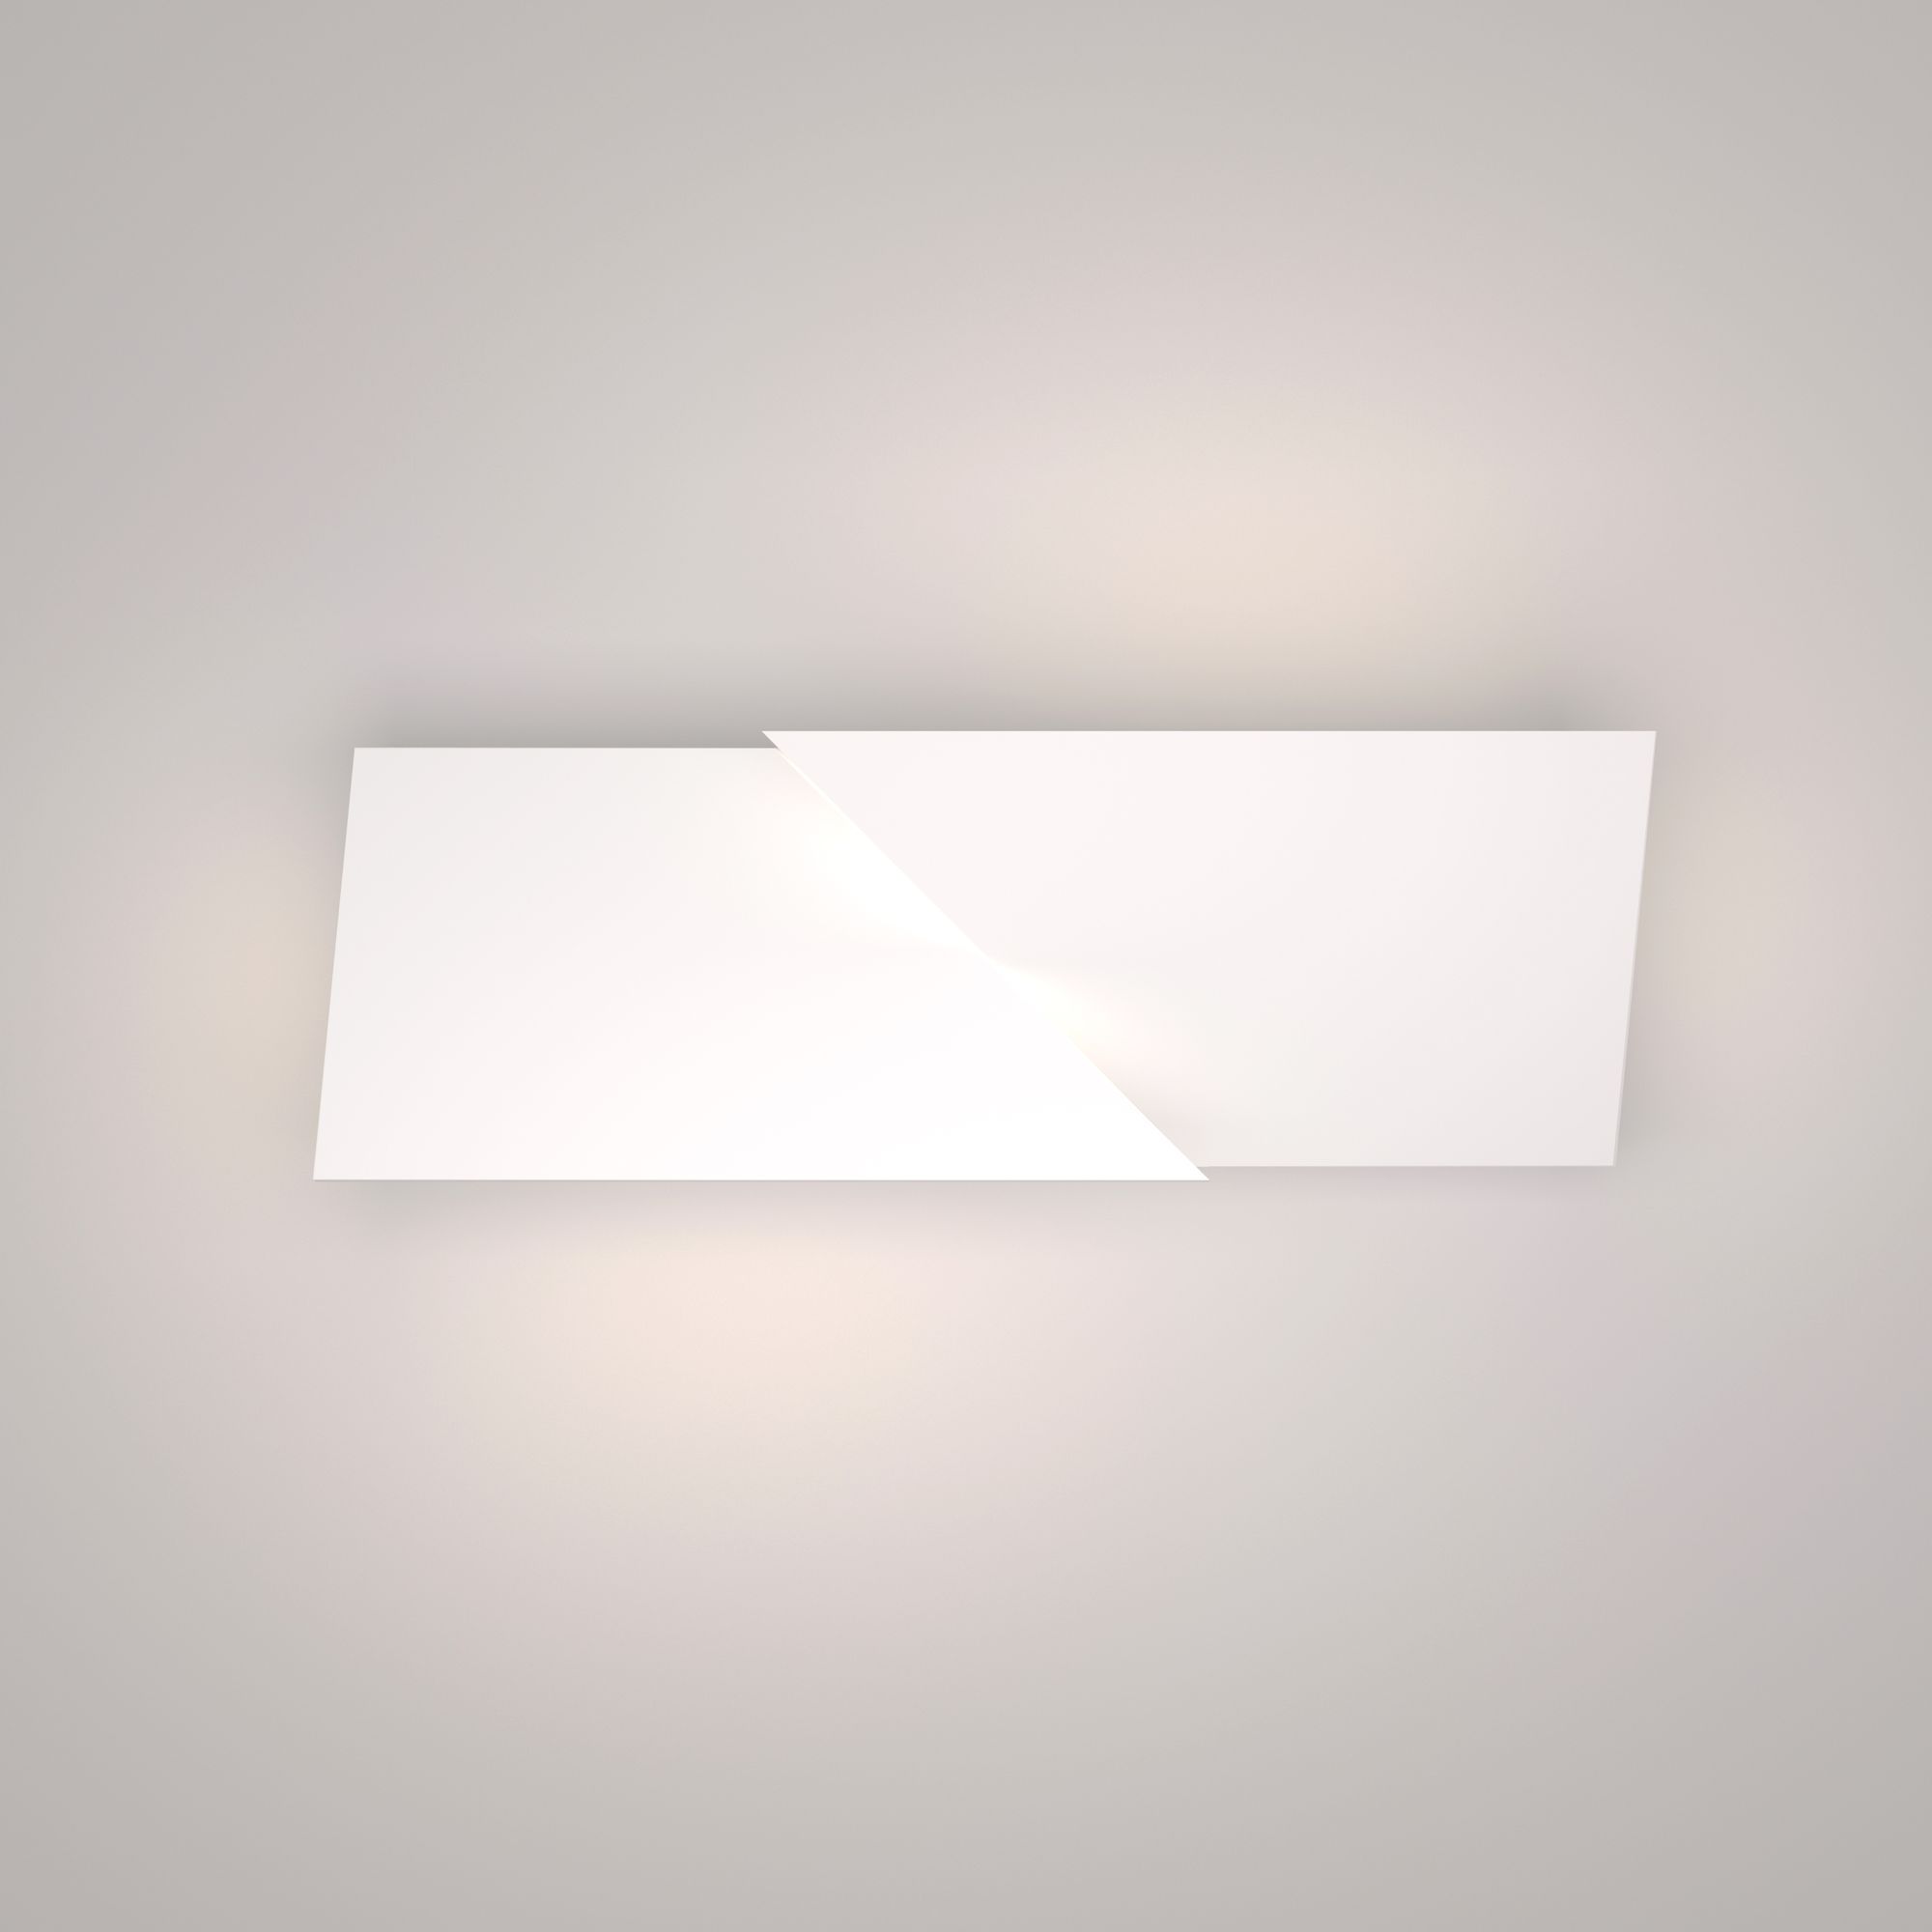 Настенный светодиодный светильник Snip LED 40106/LED белый